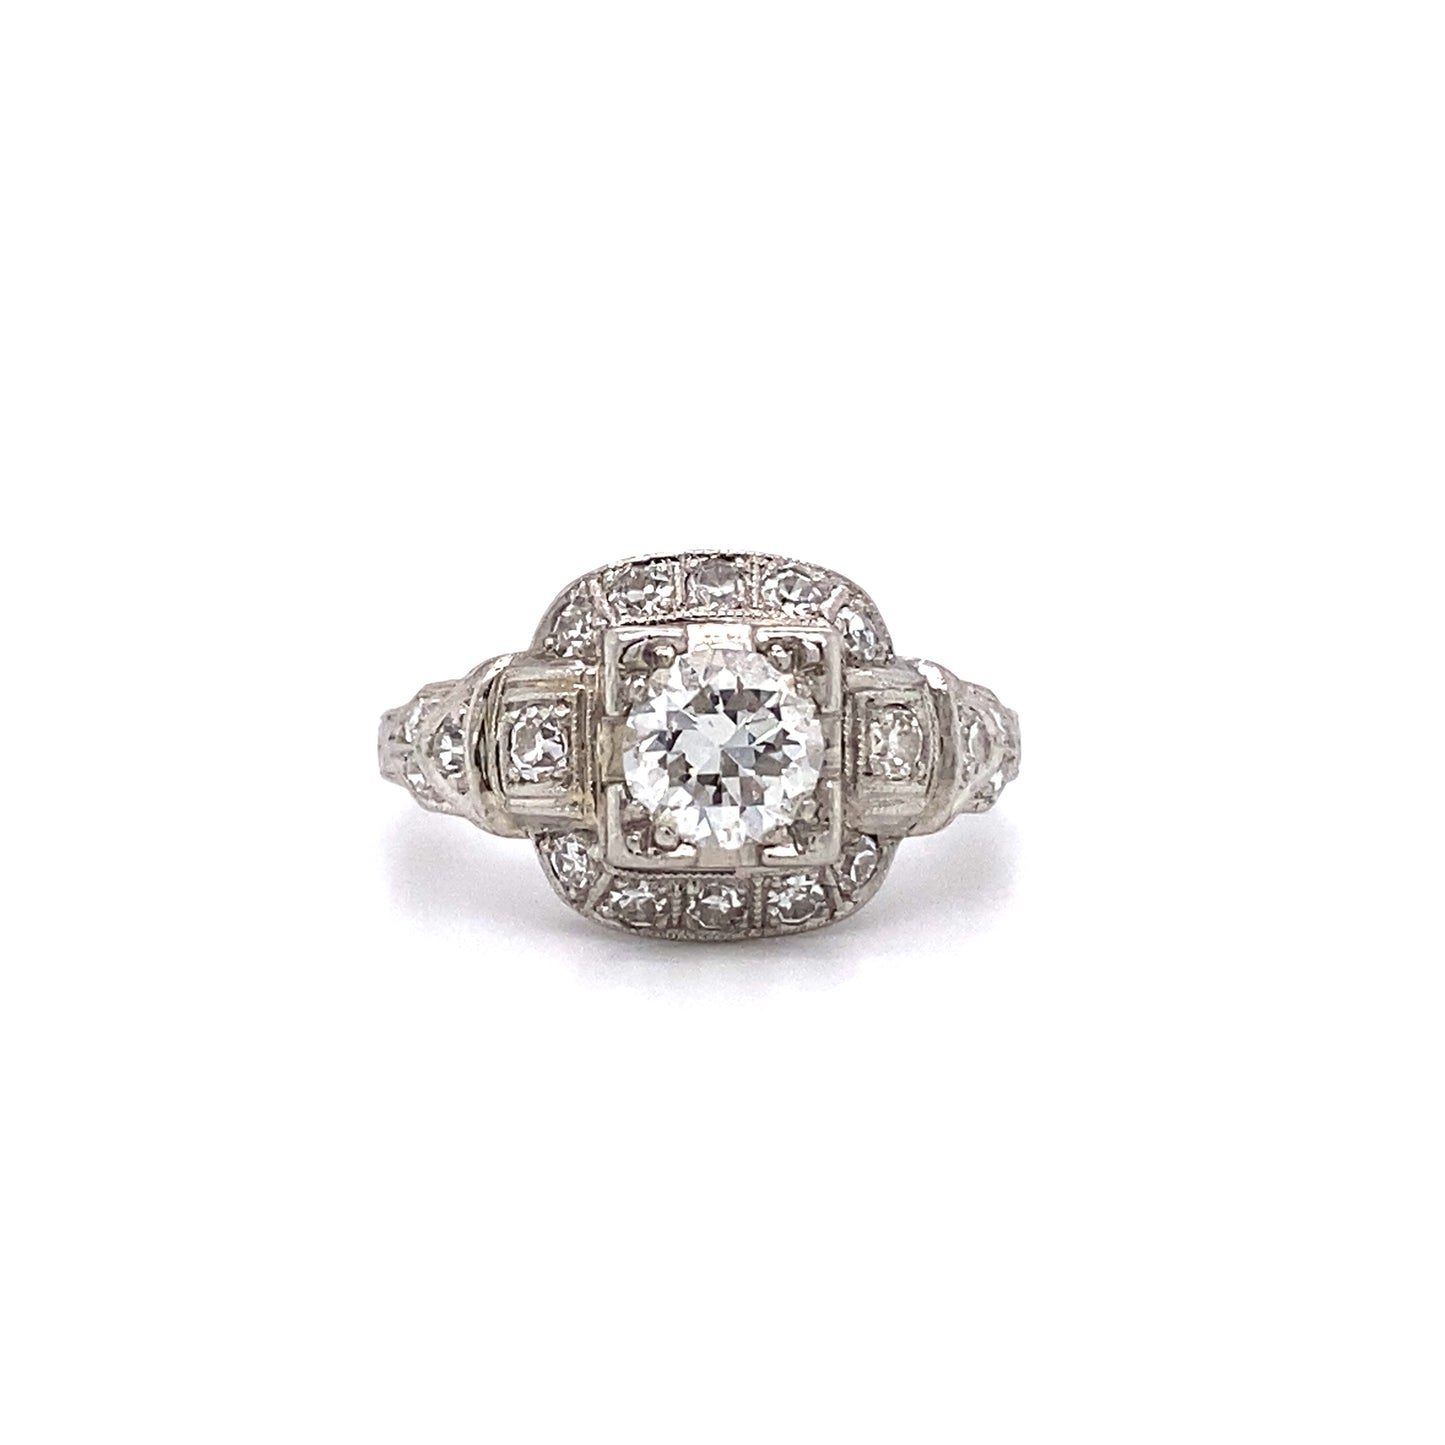 Circa 1920s 0.60 Carat Old European Cut Diamond Engagement Ring in Platinum